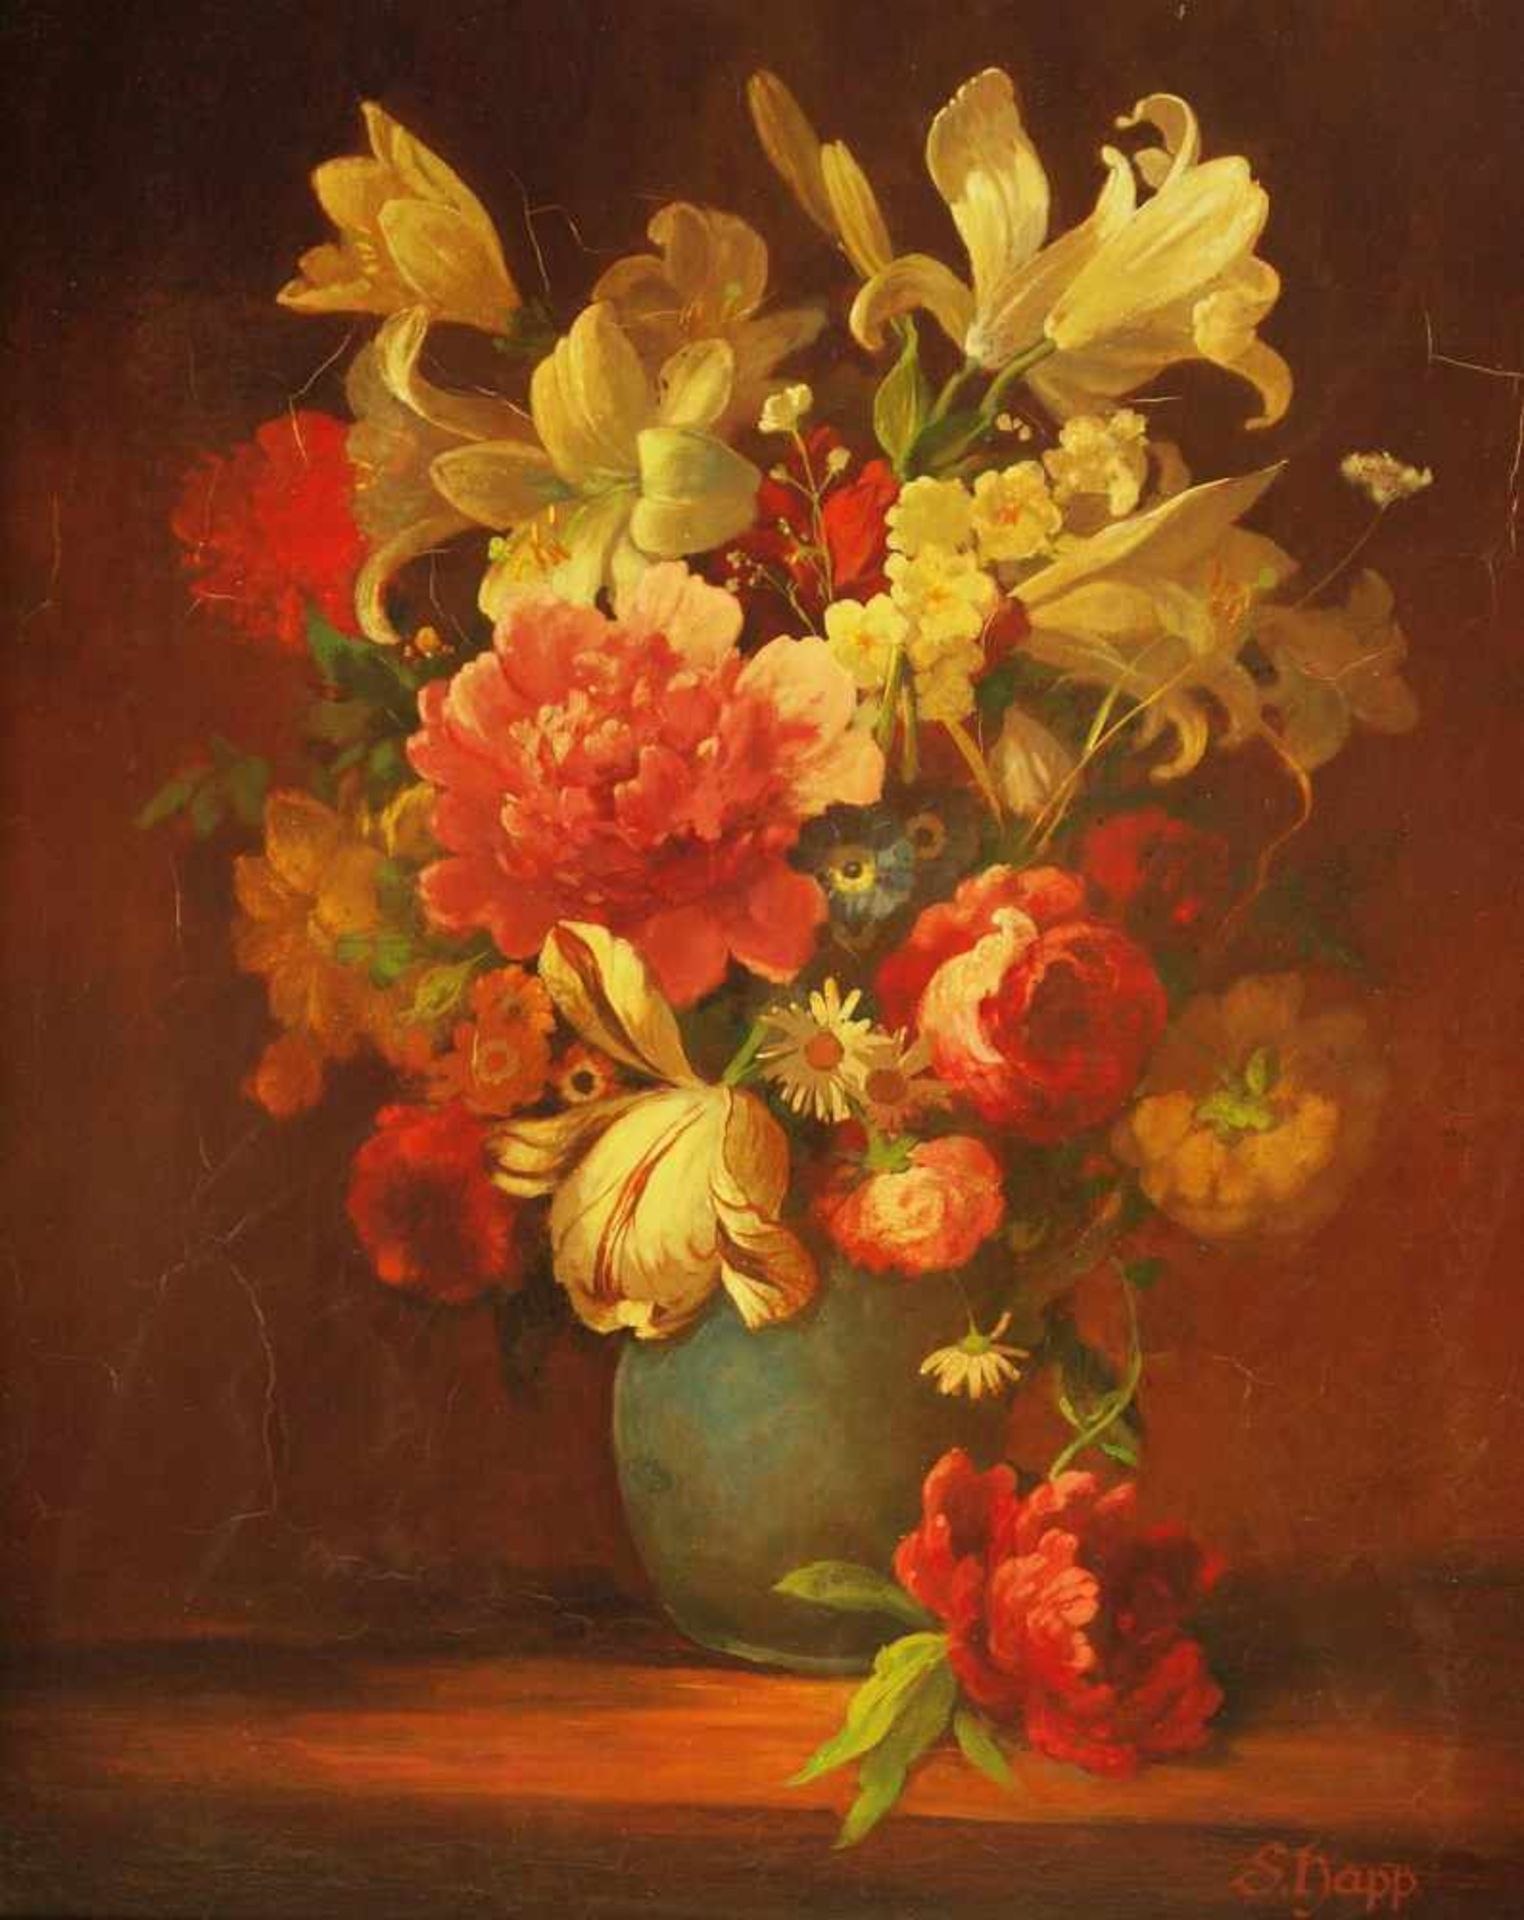 HAPP, Sepp. HAPP, Sepp. 1912 Bad Brückenau. Blumen in blauer Vase mit Pfingstrosen. Öl auf Holz, - Bild 2 aus 5